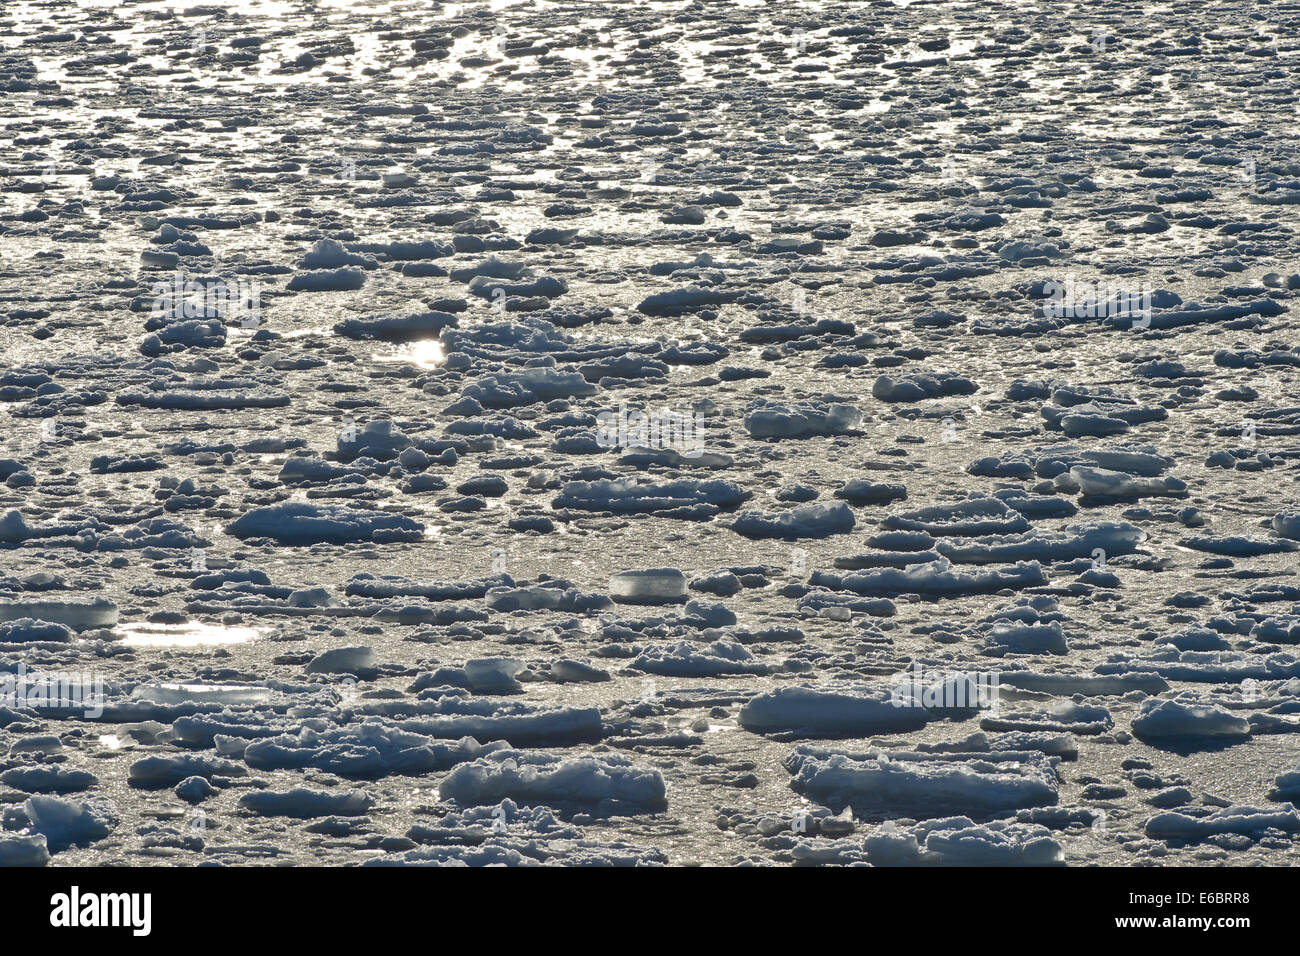 Témpanos de hielo, el Océano Ártico, Spitsbergen, Islas Svalbard y Jan Mayen, Svalbard, Noruega Foto de stock